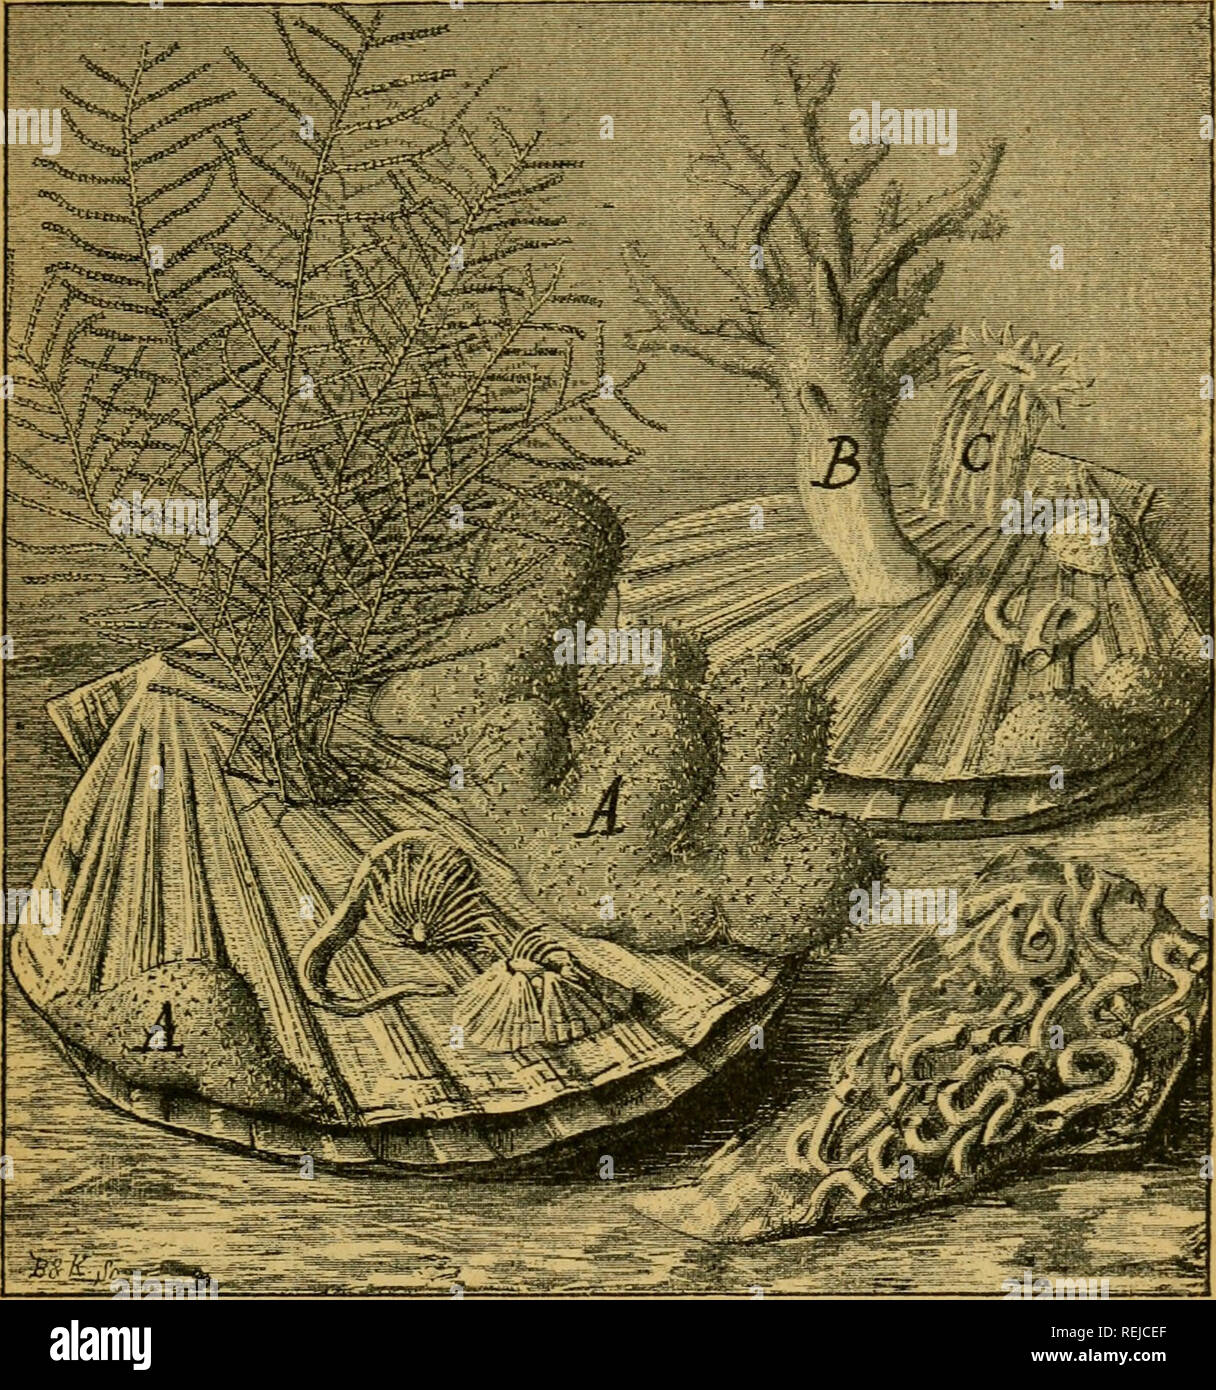 . Coelents, inodermes, protozoaires. Cnidaria; Ctenophora; Sponges; Echinodermata; Protozoa; Invertebrates. GENRE ALCYONIUM 127 Genre Alcyonium (Lin.) — Alcyon. Dans ce genre le Polypiéroïde est formé par bour- geonnement latéral et constitue une masse lobée ou di-. Fig. 71. — A. Alcyonum digitatum, B, Alcyonum palmatum. C. gartia parasitica. — Sur des coquilles de Pecten maximus. gitée, non rigide et ayant une certaine contractilité. Alcyonium digitatum (Lin). Alcyon digité. Cette espèce (fig. 71 A) forme un Polypiéroïde cy-. Please note that these images are extracted from scanned page image Stock Photo